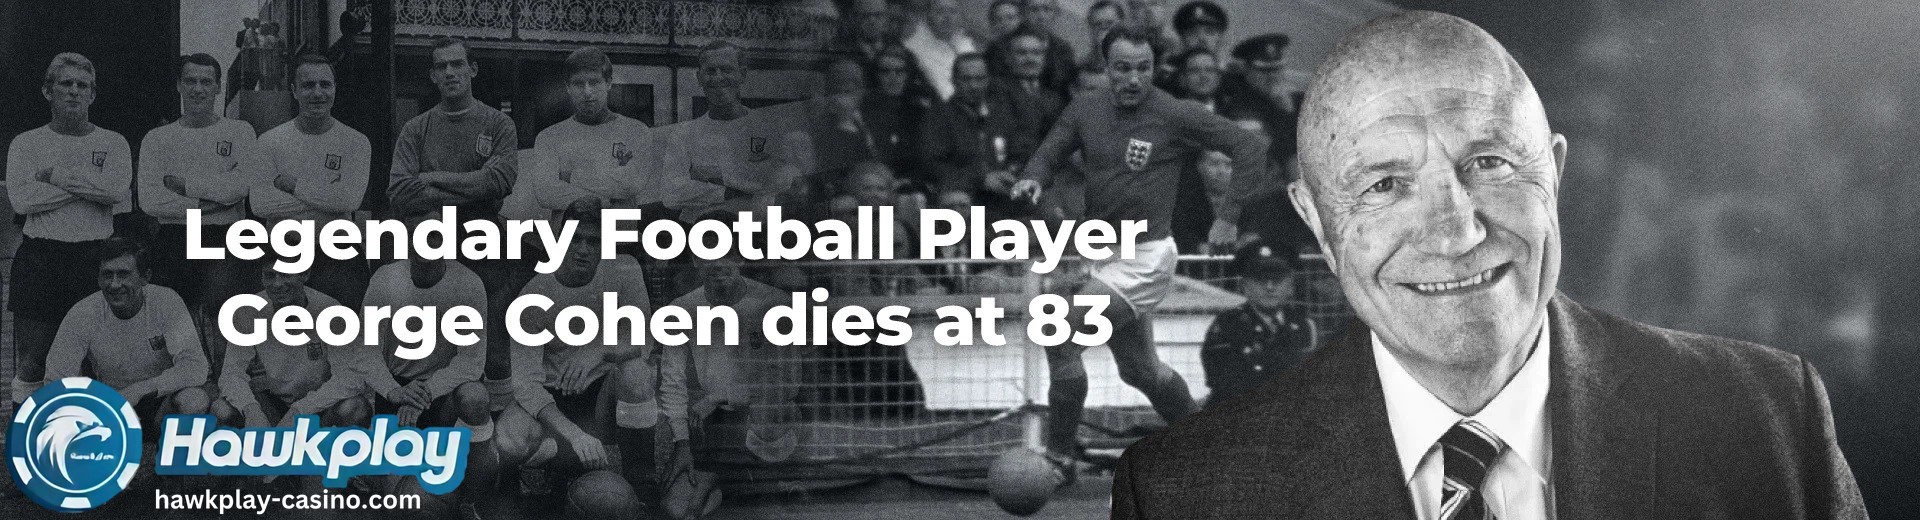 Football Ang Fulham Legend na si George Cohen ay Pumanaw sa edad na 83 Hawkplay